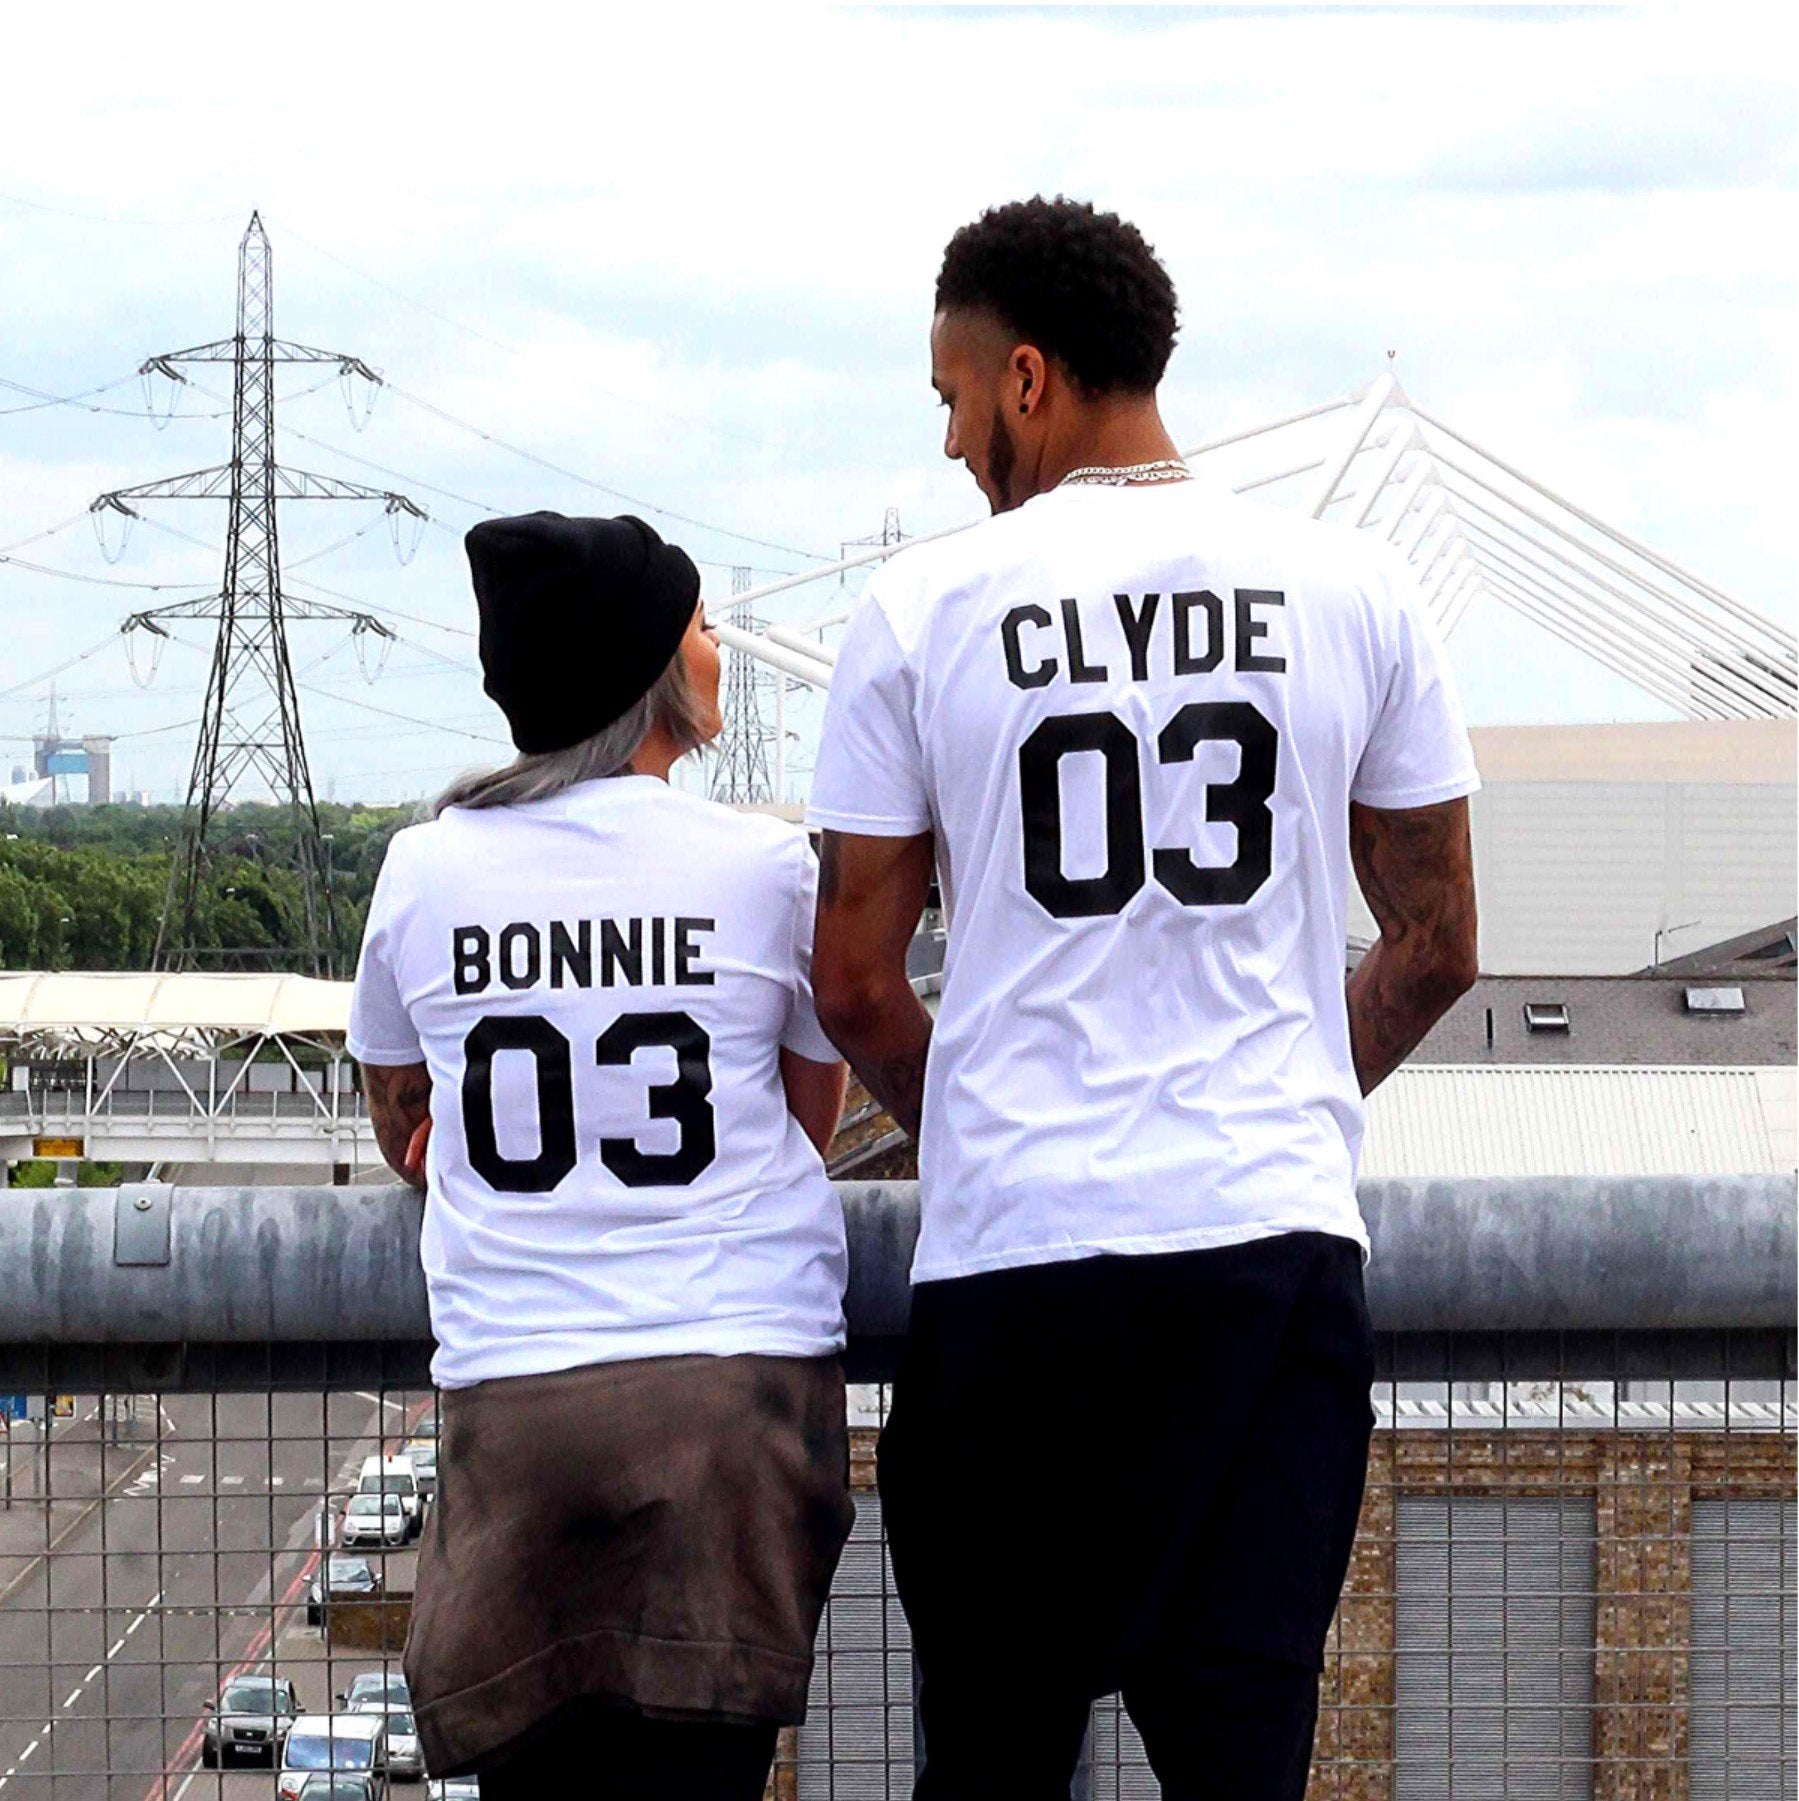 Bonnie & Clyde 03 Shirts